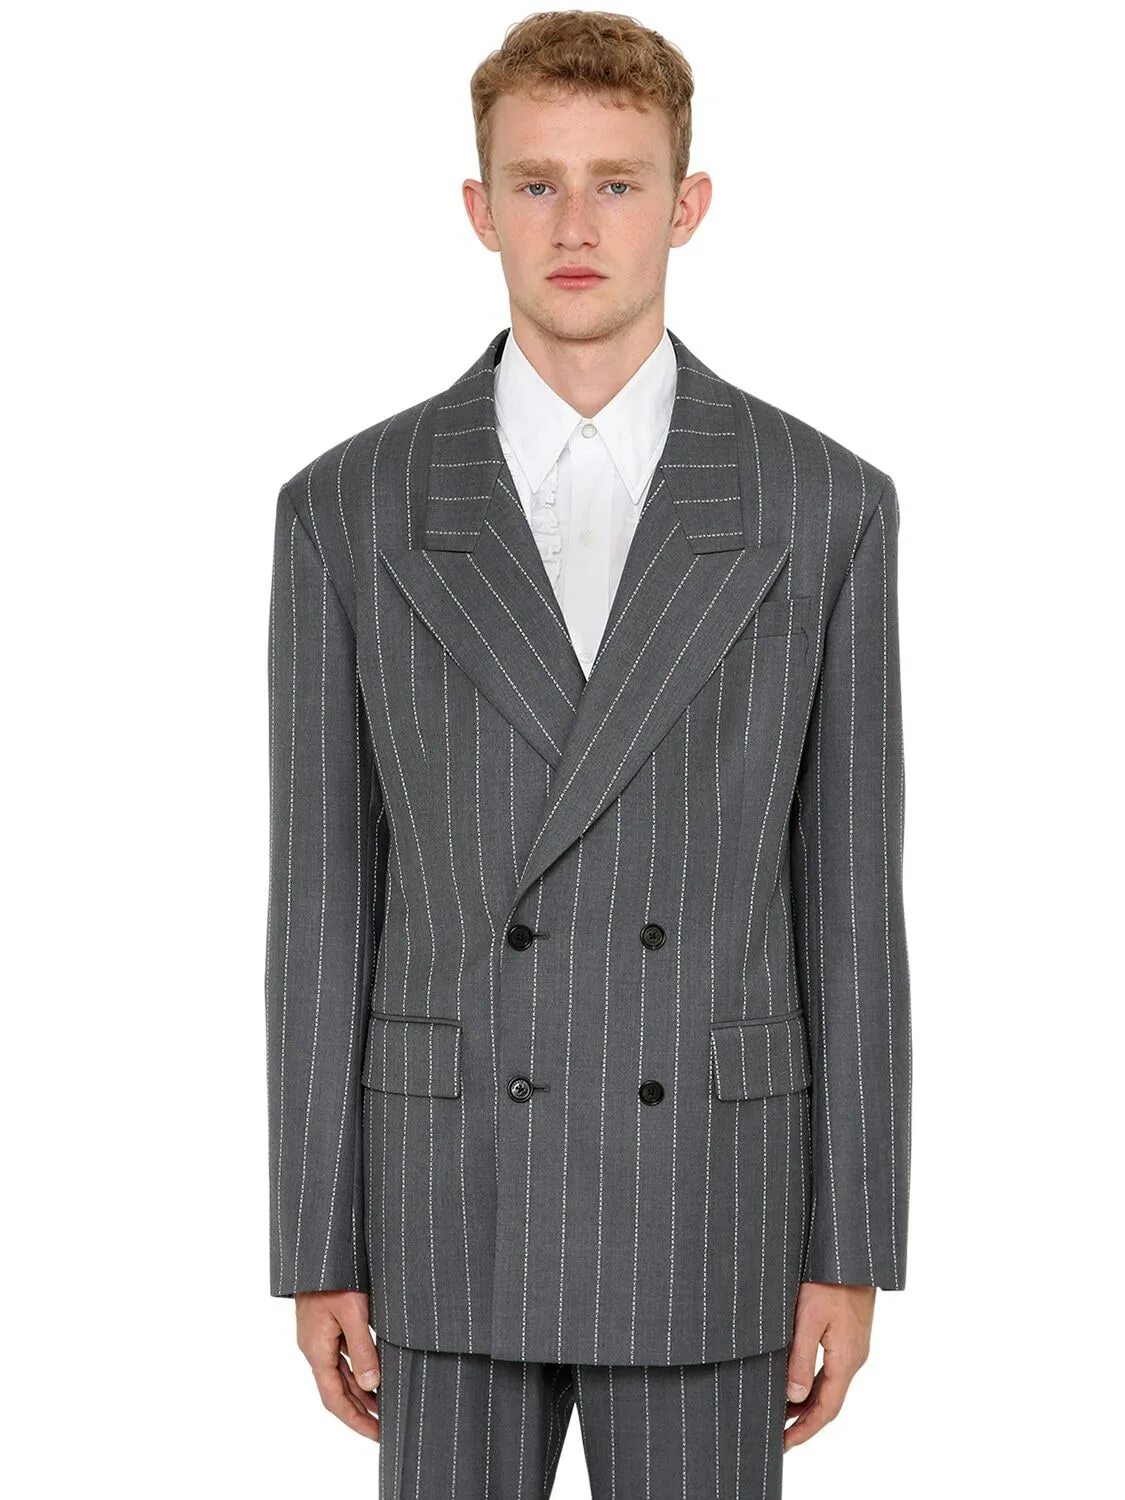 Классический костюм в полоску. Двубортный пиджак Баленсиага. Marks& Spencer двубортный мужской пиджак. Серый двубортный пиджак мужской. Мужской пиджак двух бортный.